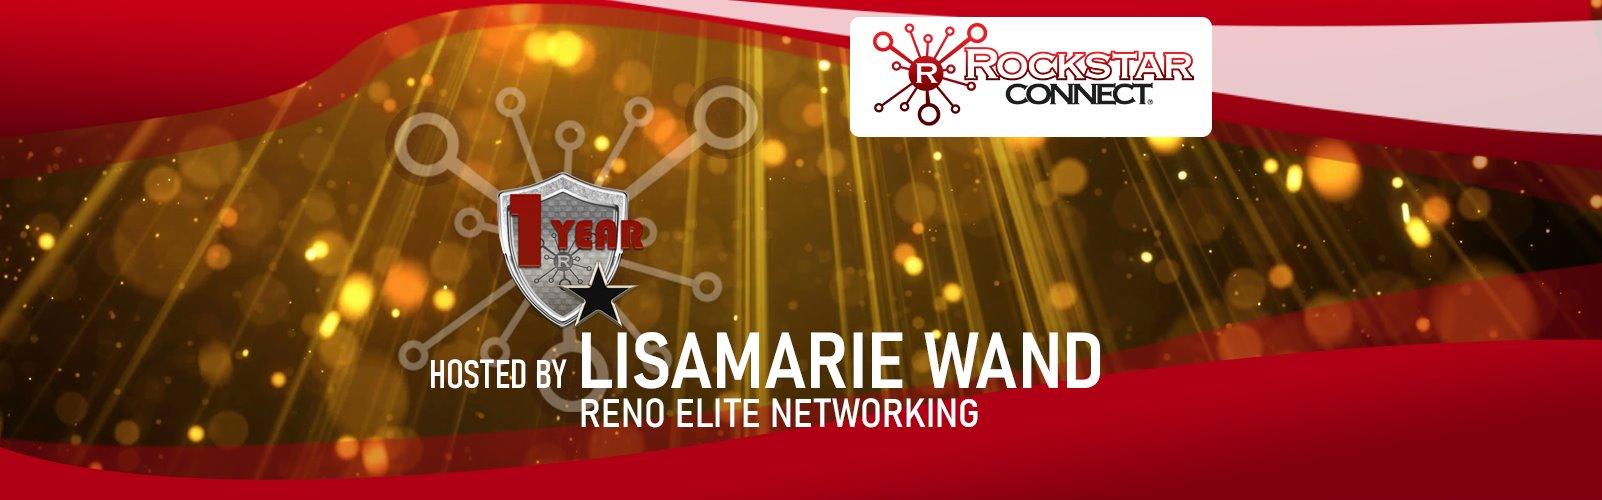 Free Reno Elite Rockstar Connect Networking Event (February, Reno Nevada)